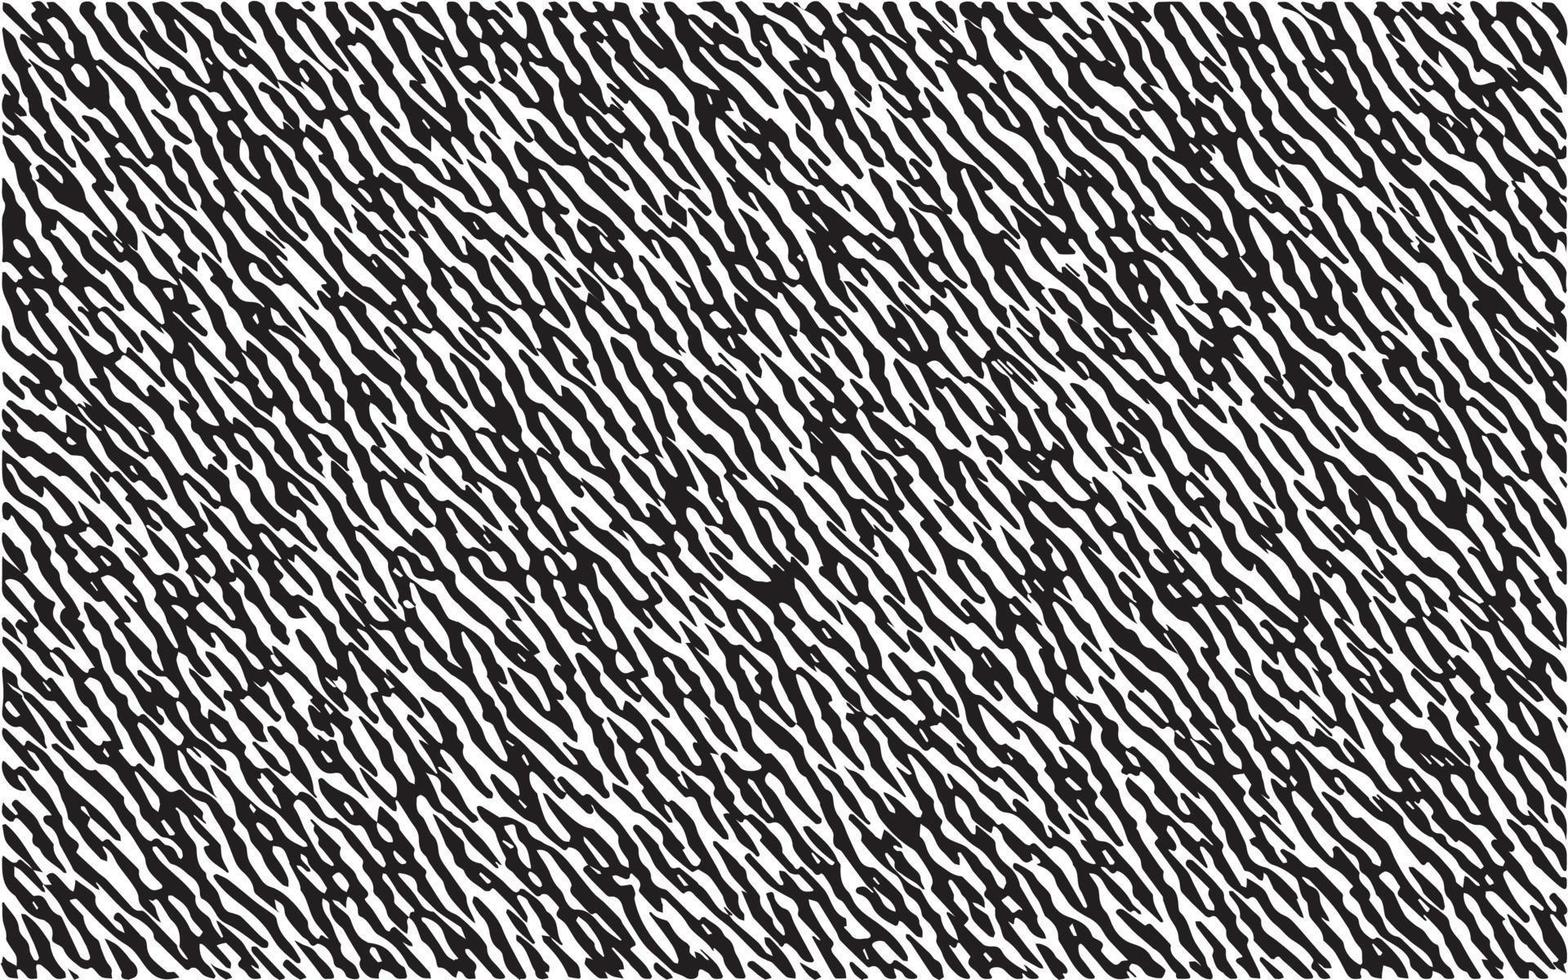 diseño de patrón de textura de cebra en blanco y negro. patrón de rayas de fondo de ilustración de vector de piel animal. líneas curvas negras con textura áspera aisladas en blanco